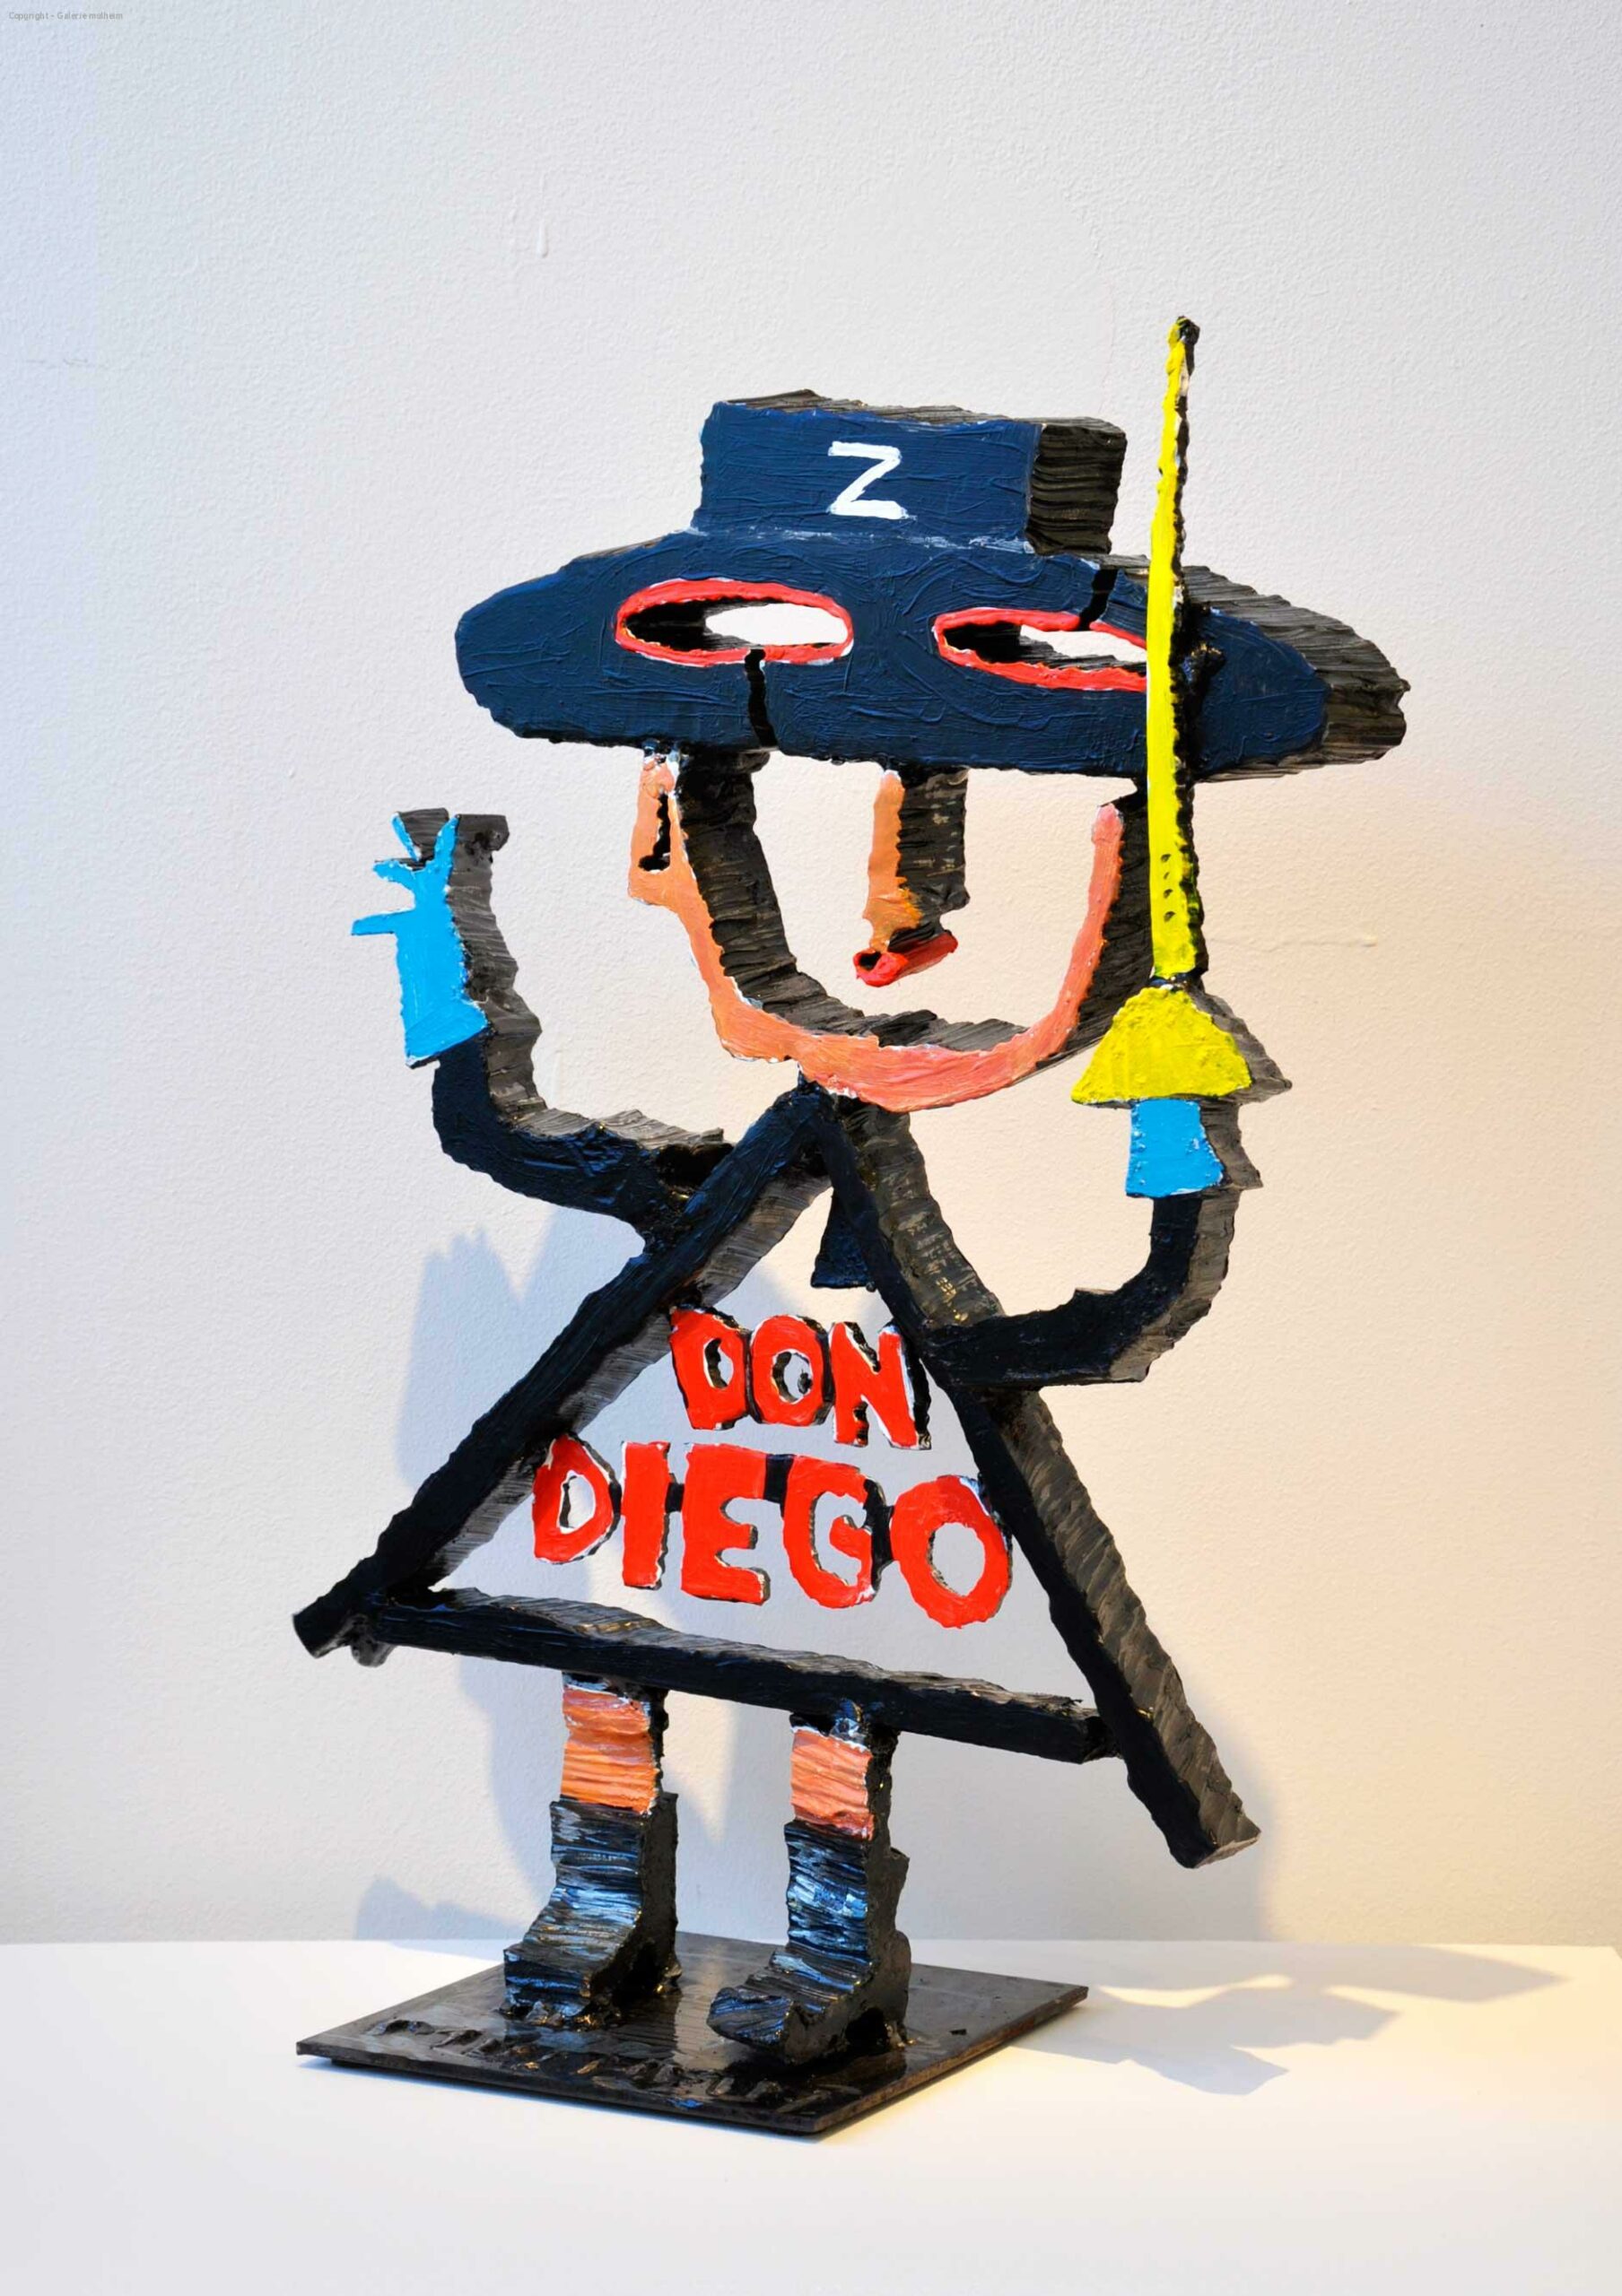 Z Don Diego - Sculpture en acier peint - Hauteur 45 cm